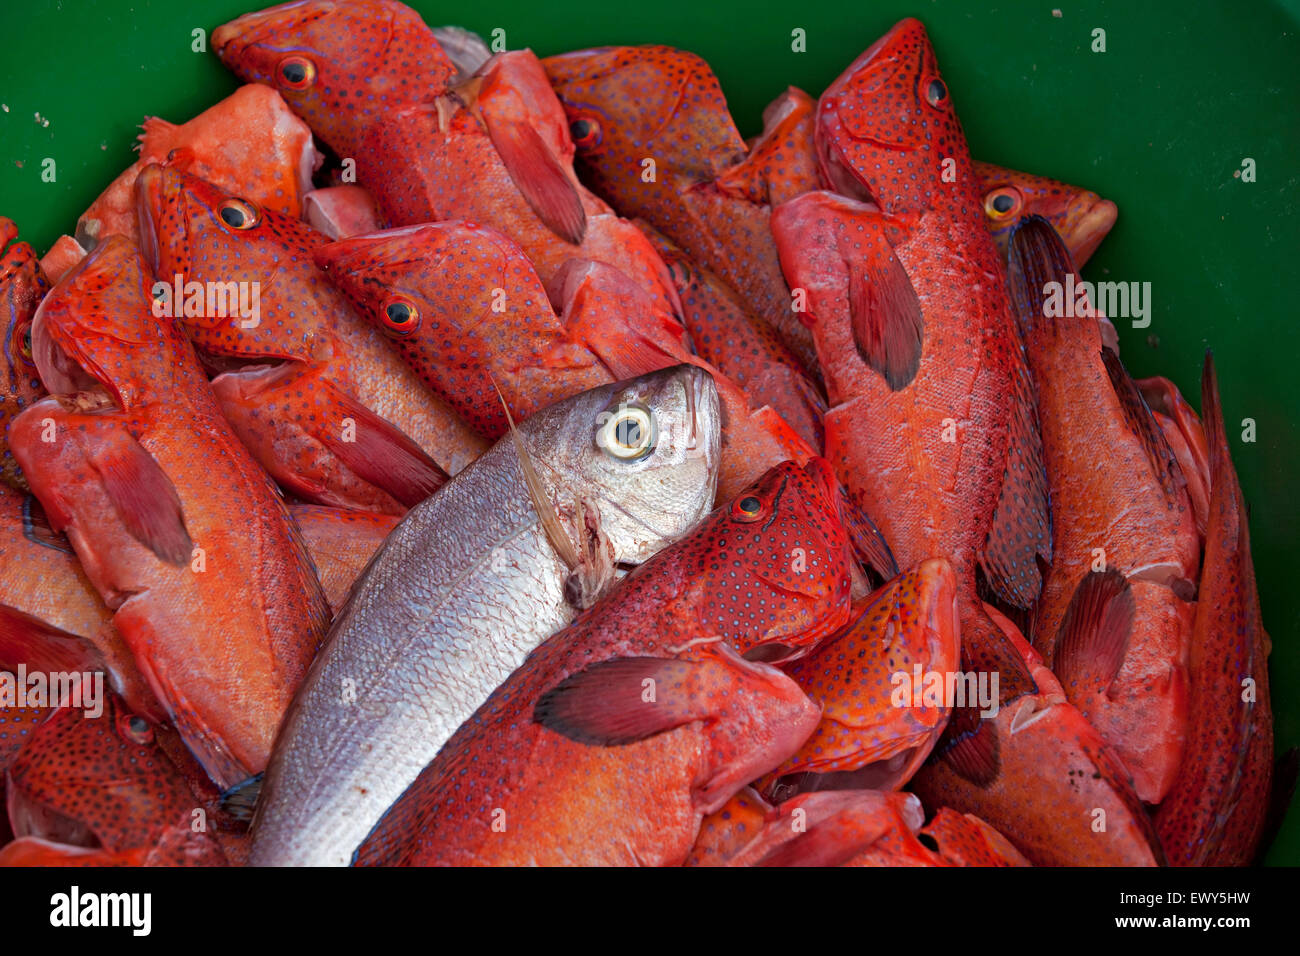 Poisson frais de poisson garoupa rouge / le mérou dans le port du village de pêcheurs Palmeira sur l'île de Sal, Cap-Vert Banque D'Images